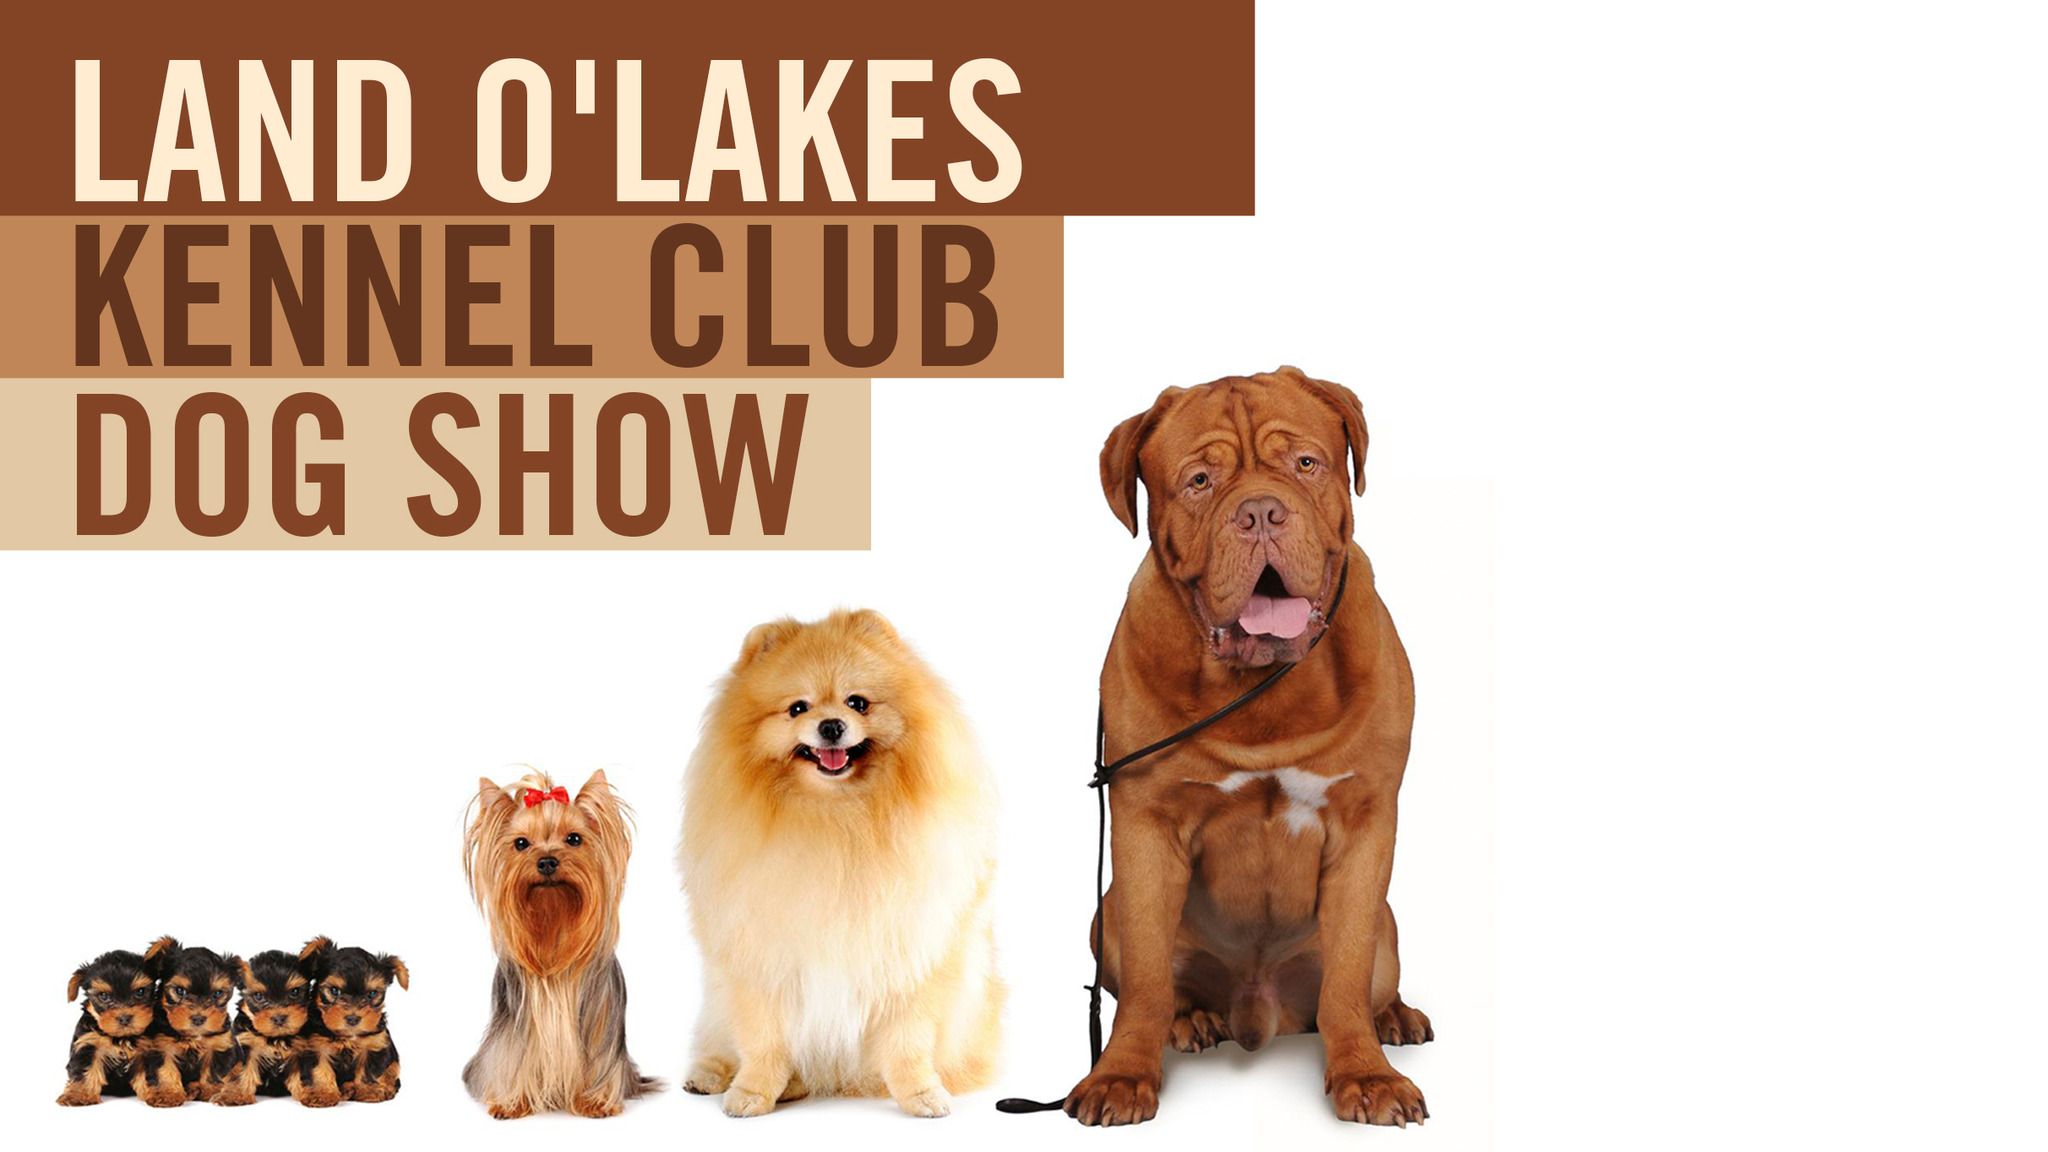 Land O' Lakes Kennel Club Dog Show Billets Dates d'événements et